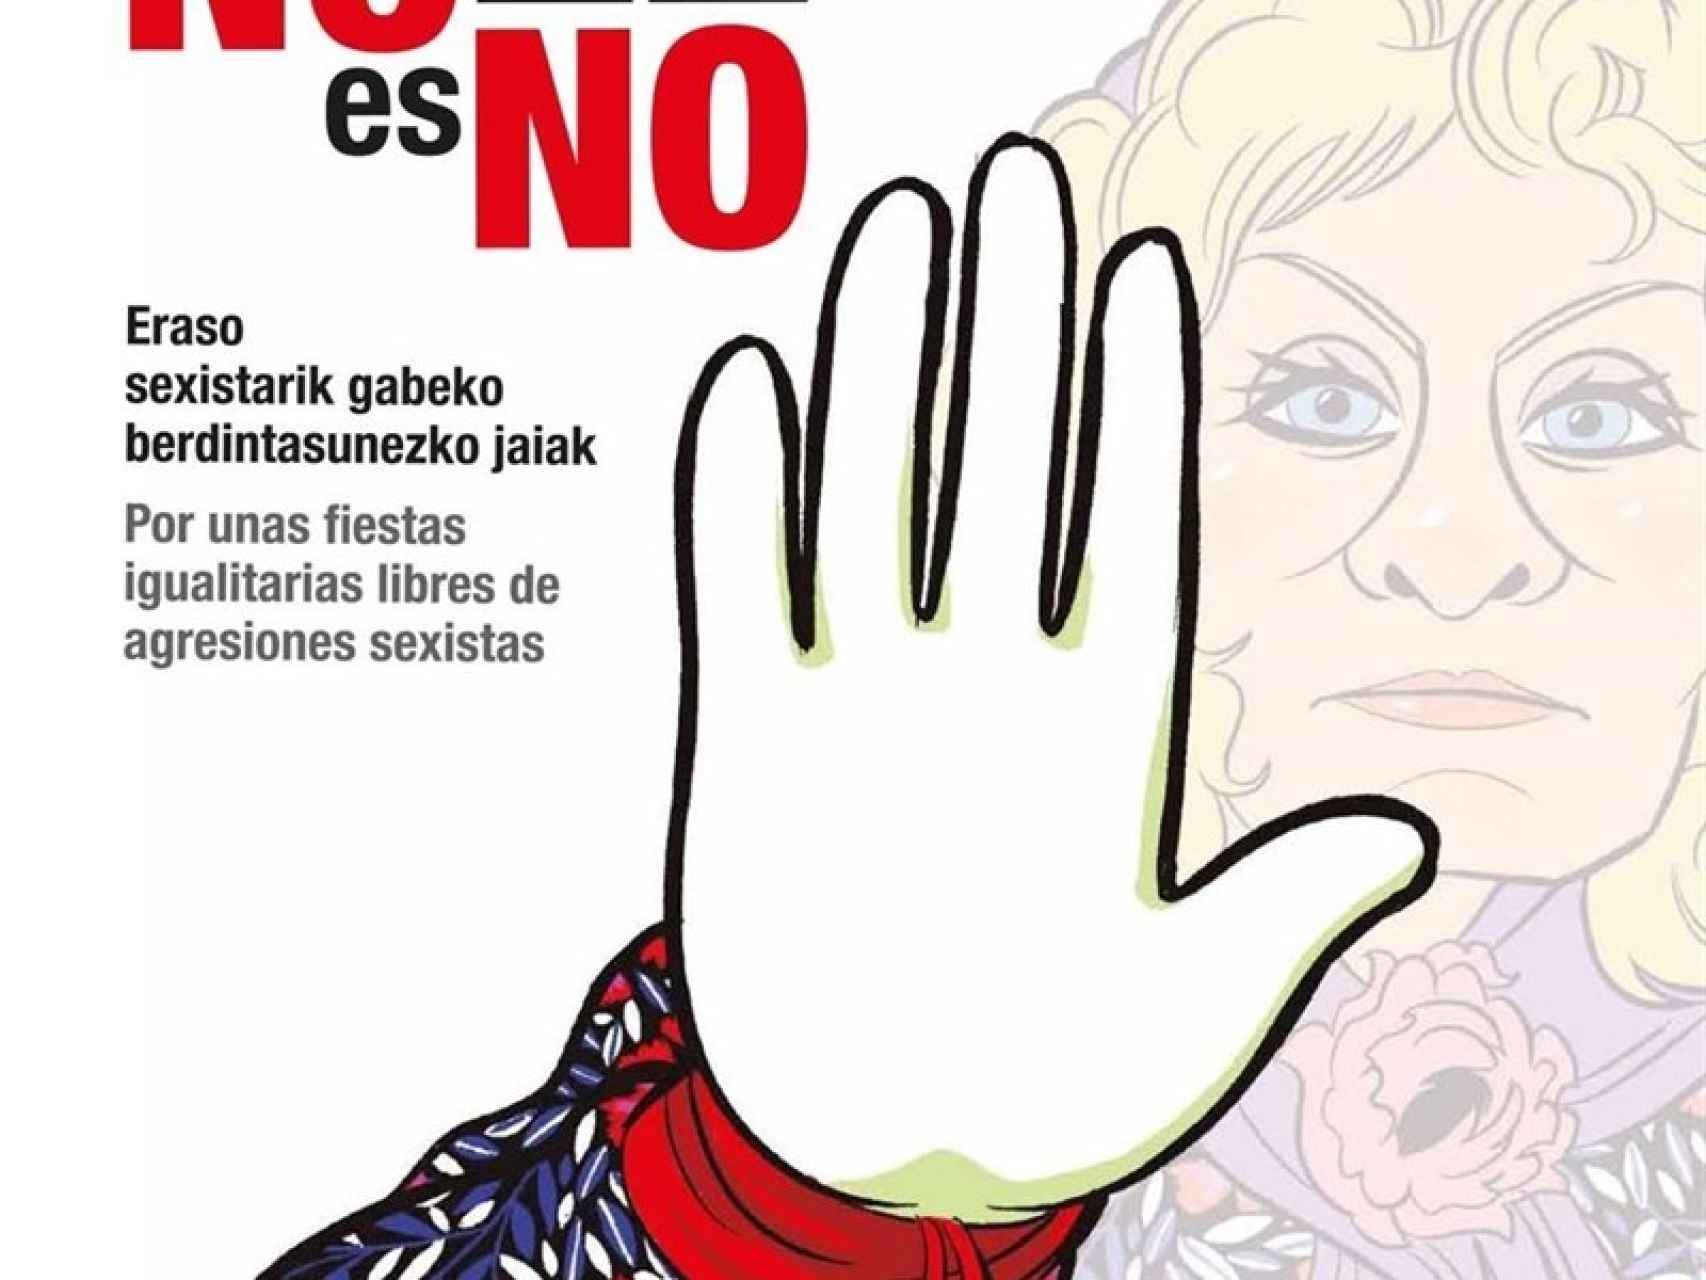 El cartel de la campaña en contra de las agresiones sexistas en Bilbao.